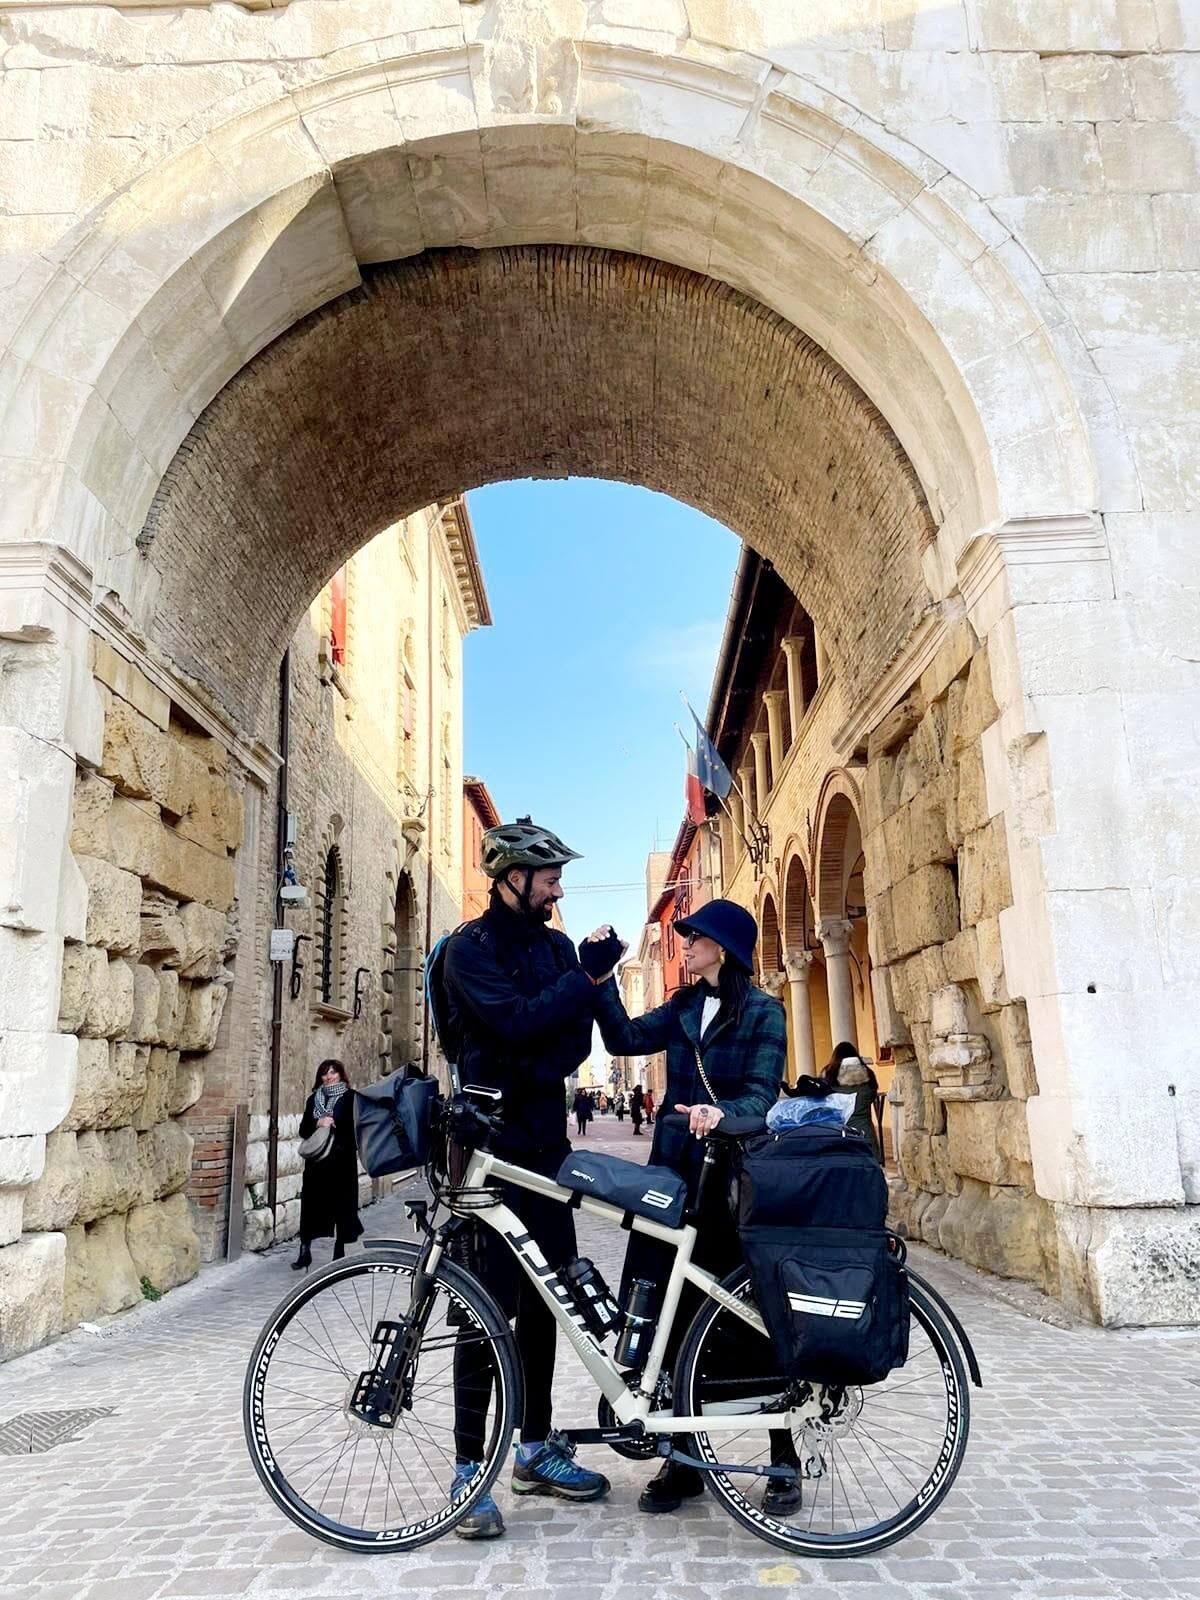 Ventimila chilometri in bici per raccogliere fondi: al via sabato il giro d’Europa di Daniele Grassetti per finanziare progetti inclusivi